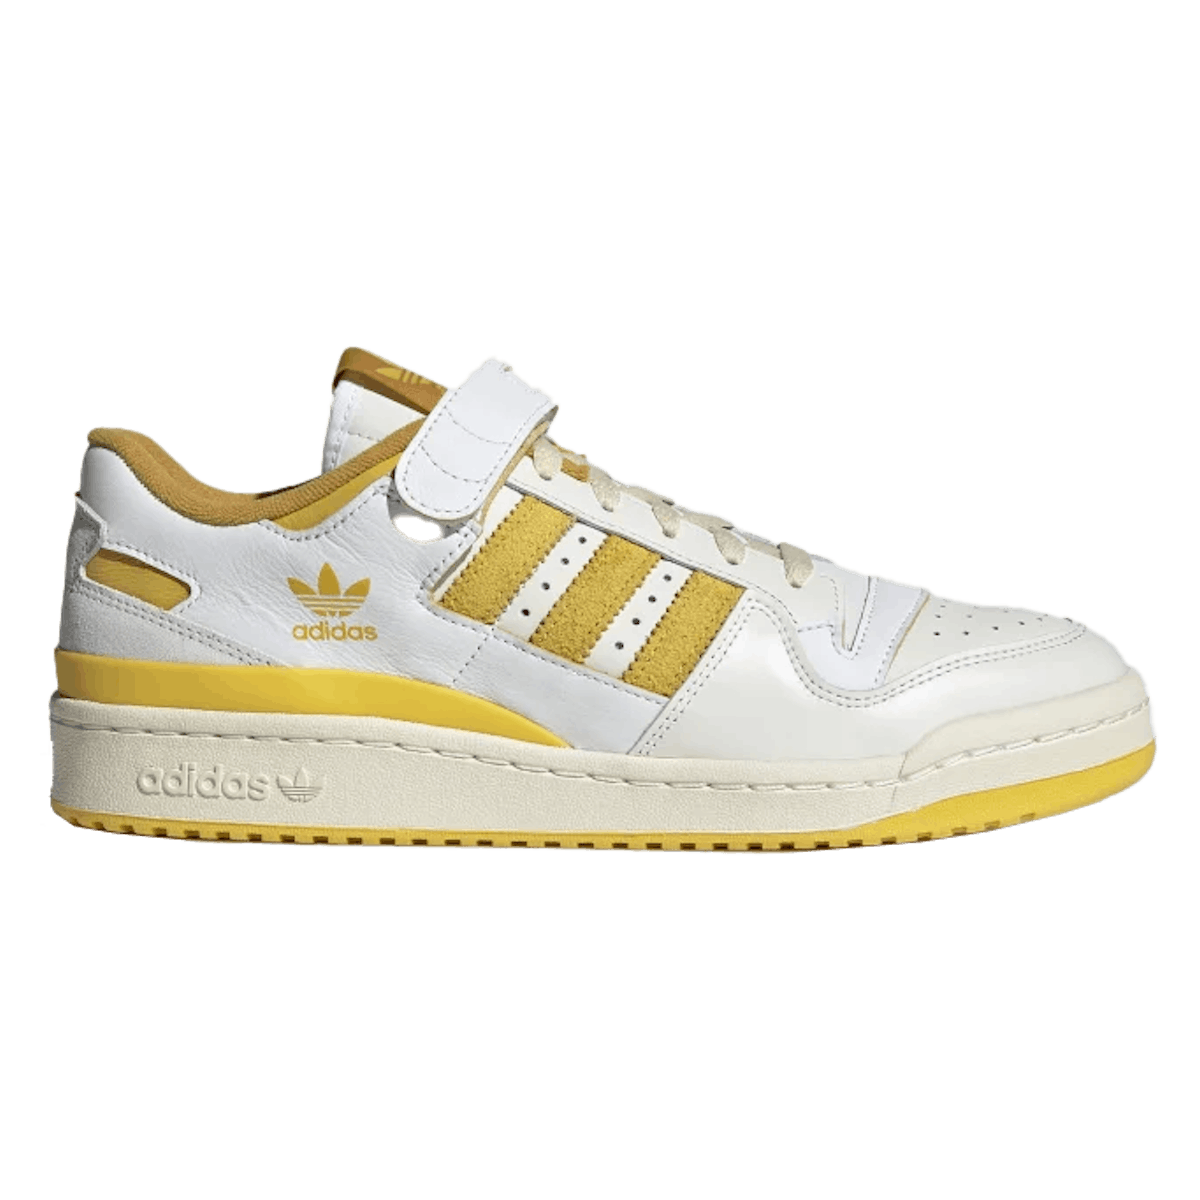 Adidas Forum 84 Low "White Yellow"